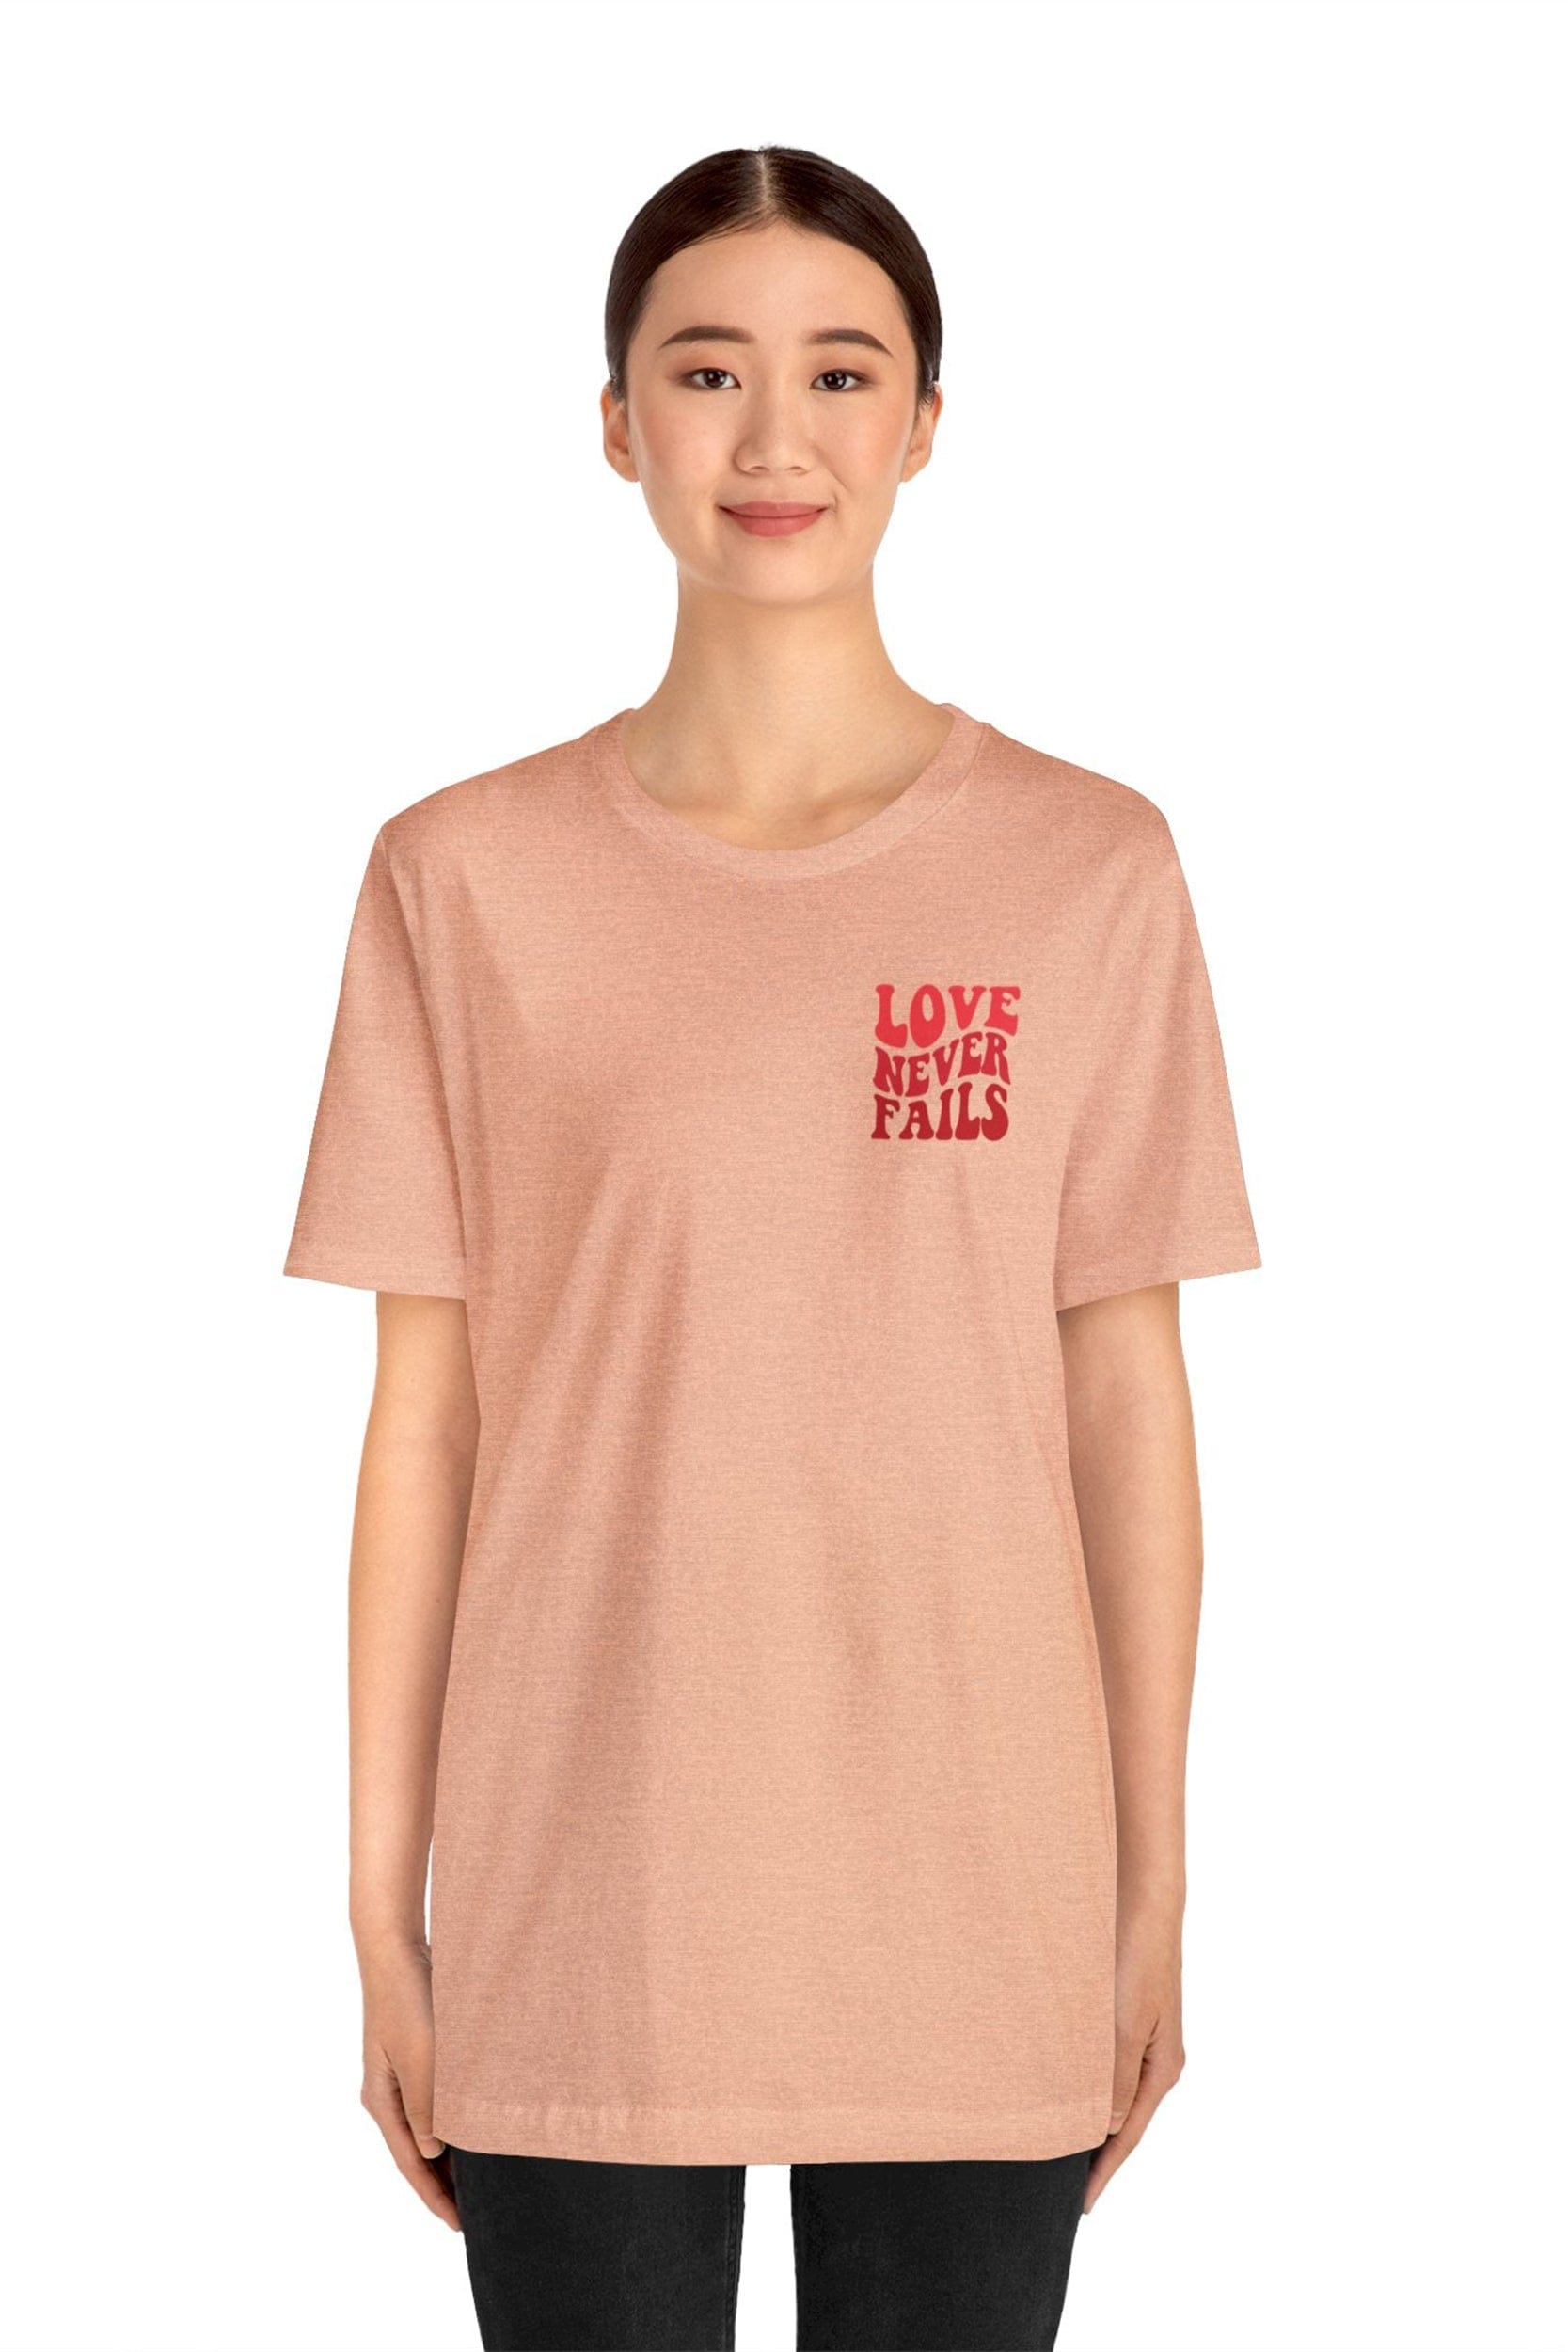 "LOVE NEVER FAILS" T-Shirt